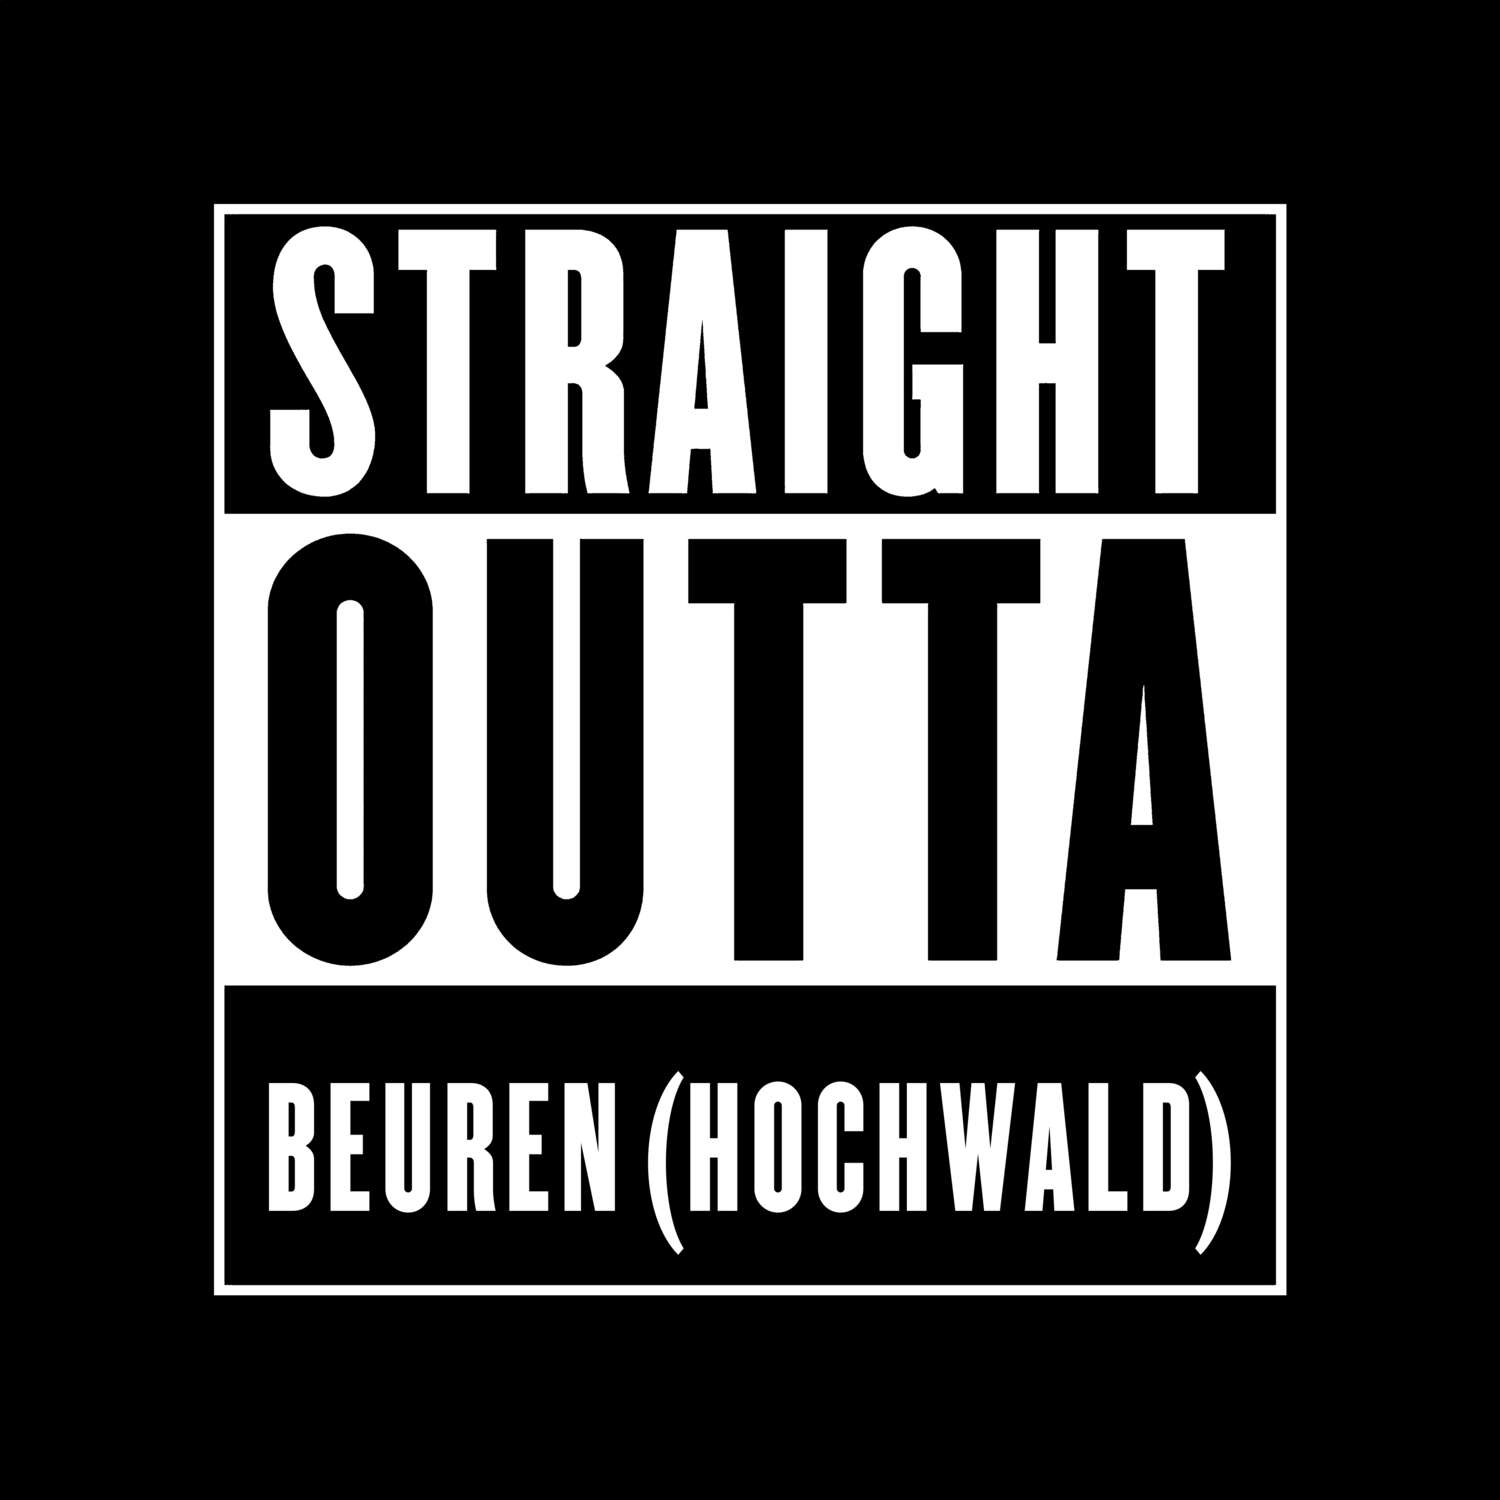 Beuren (Hochwald) T-Shirt »Straight Outta«